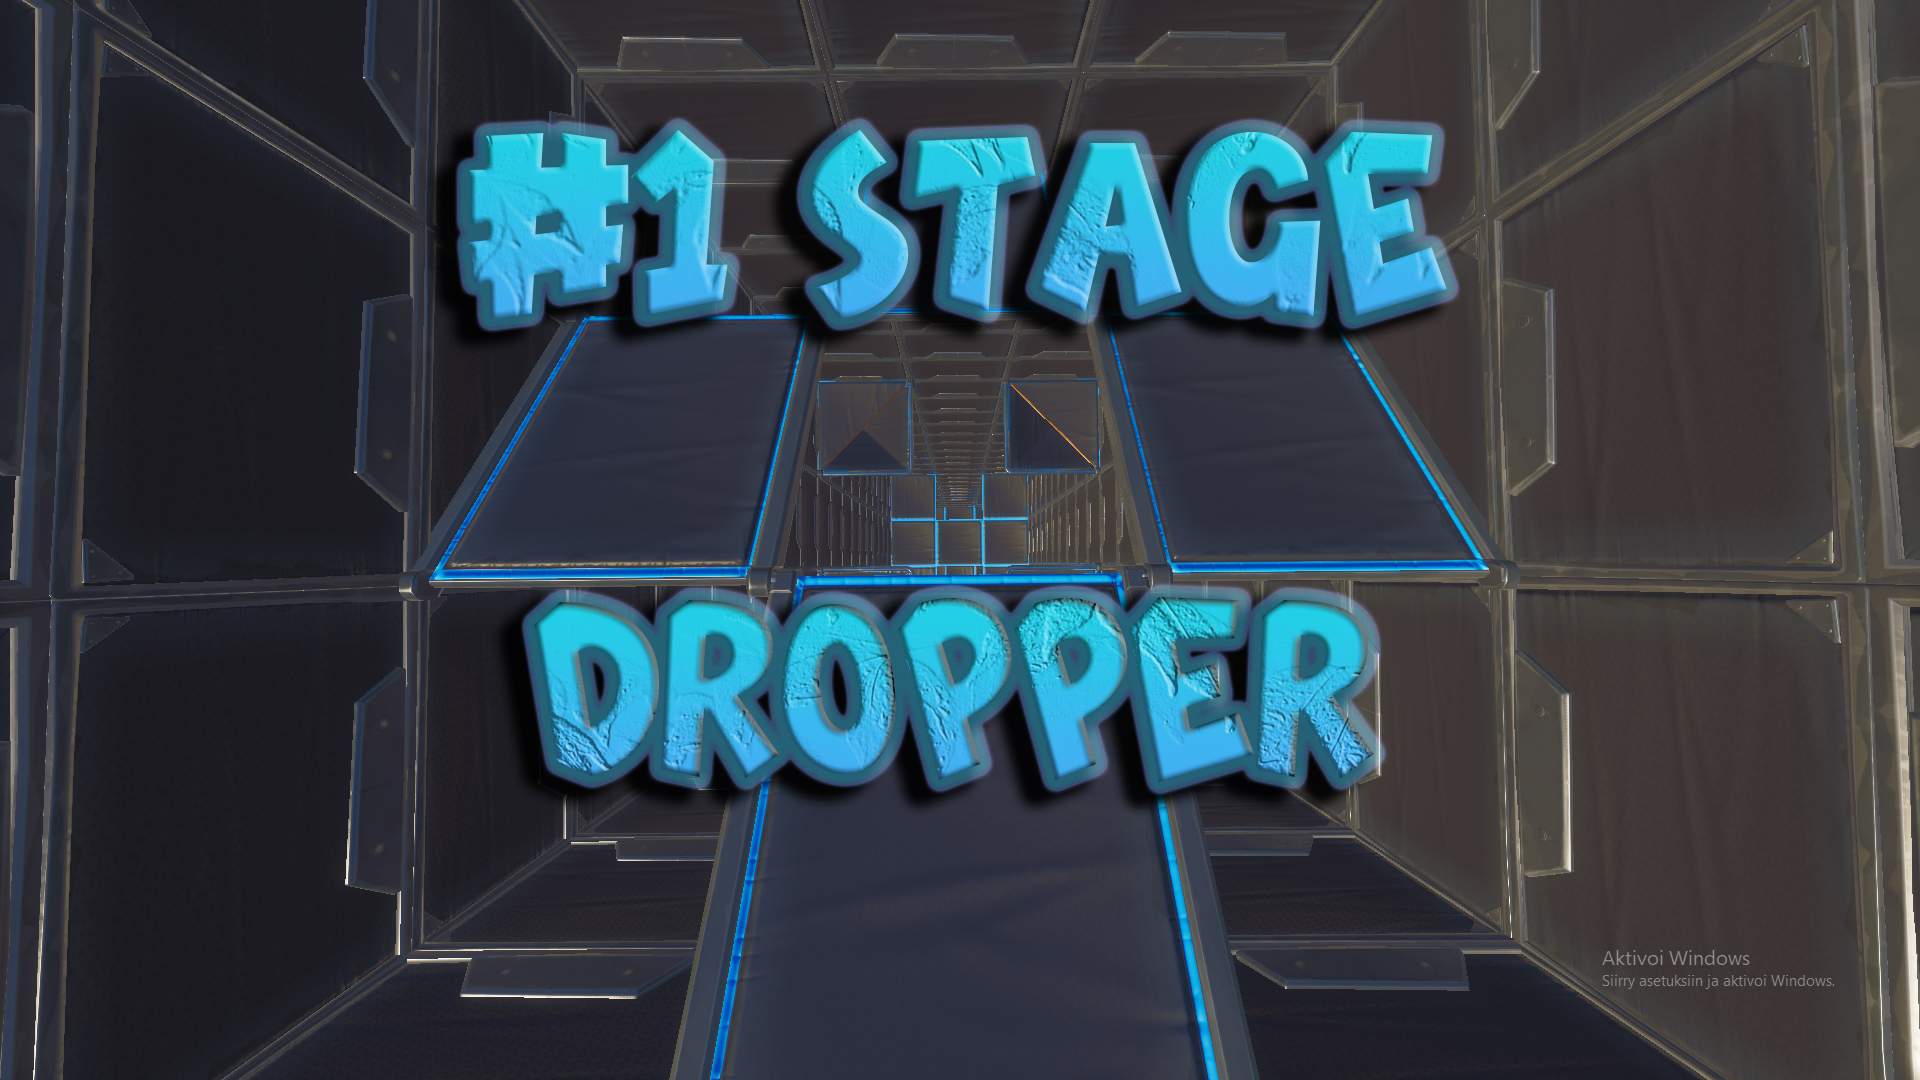 1 STAGE DROPPER